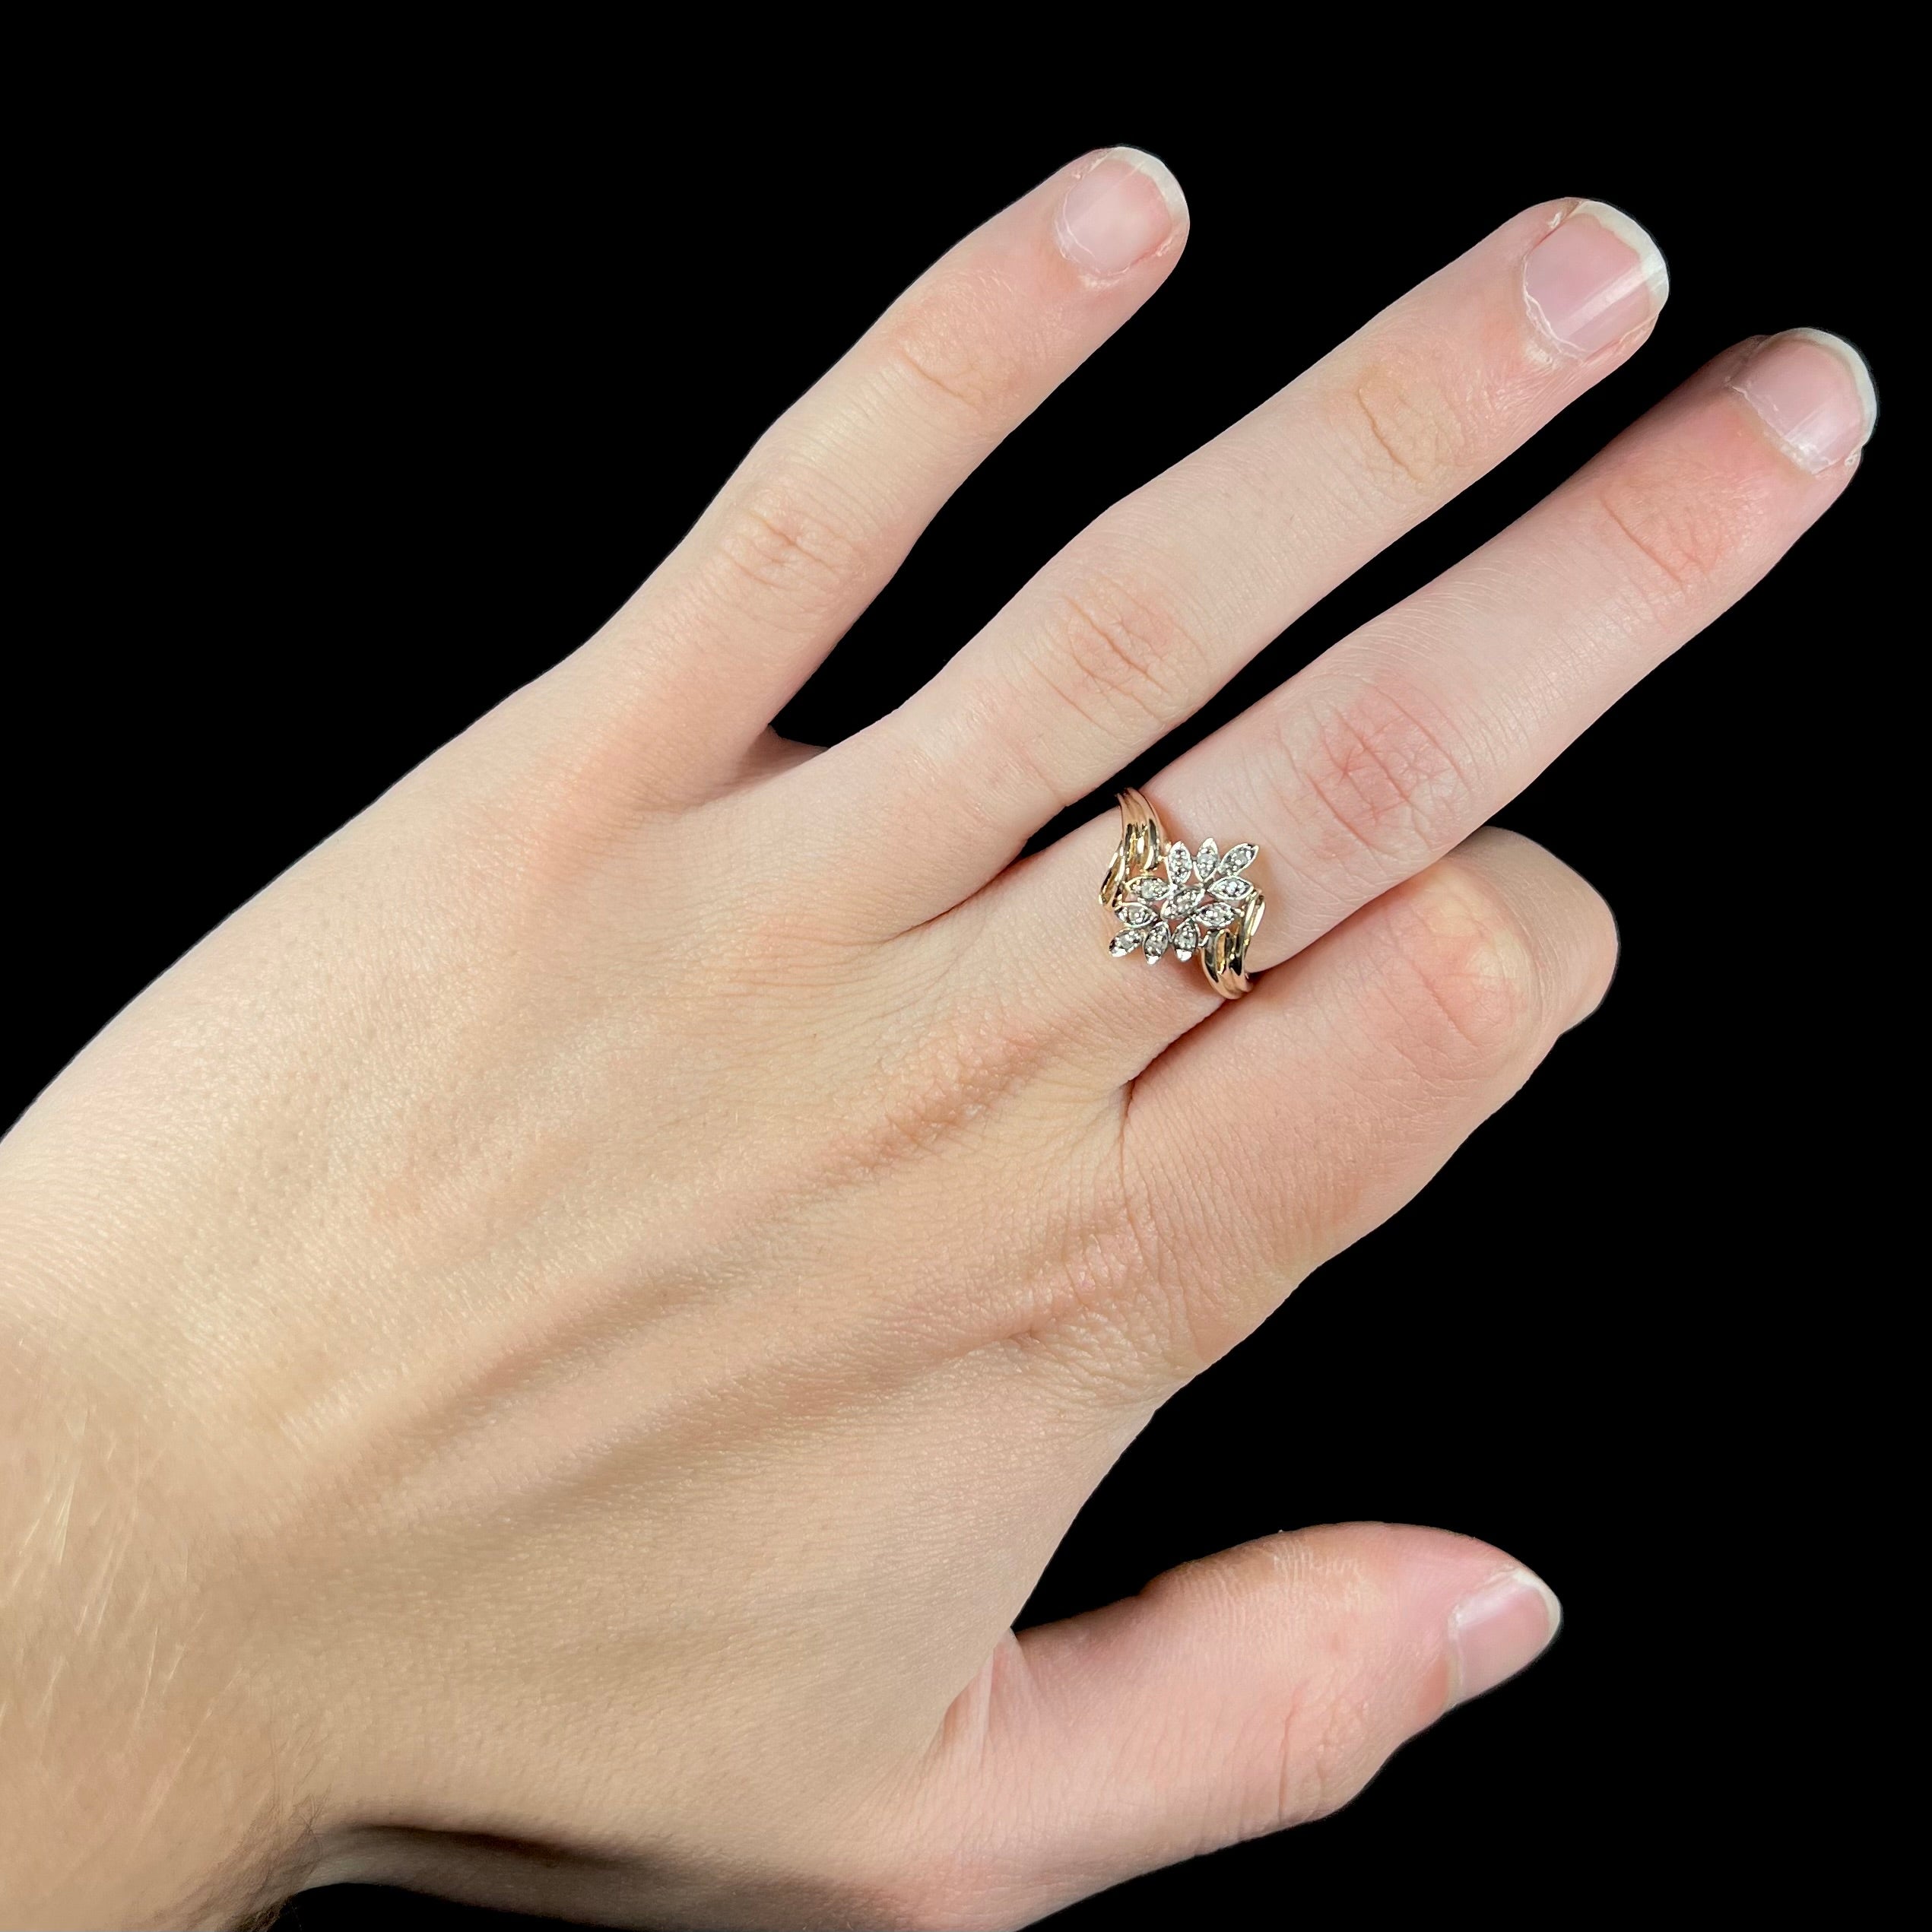 Buy Dazzling Diamond Ring Online - Shop Lab Grown Diamonds at Emori